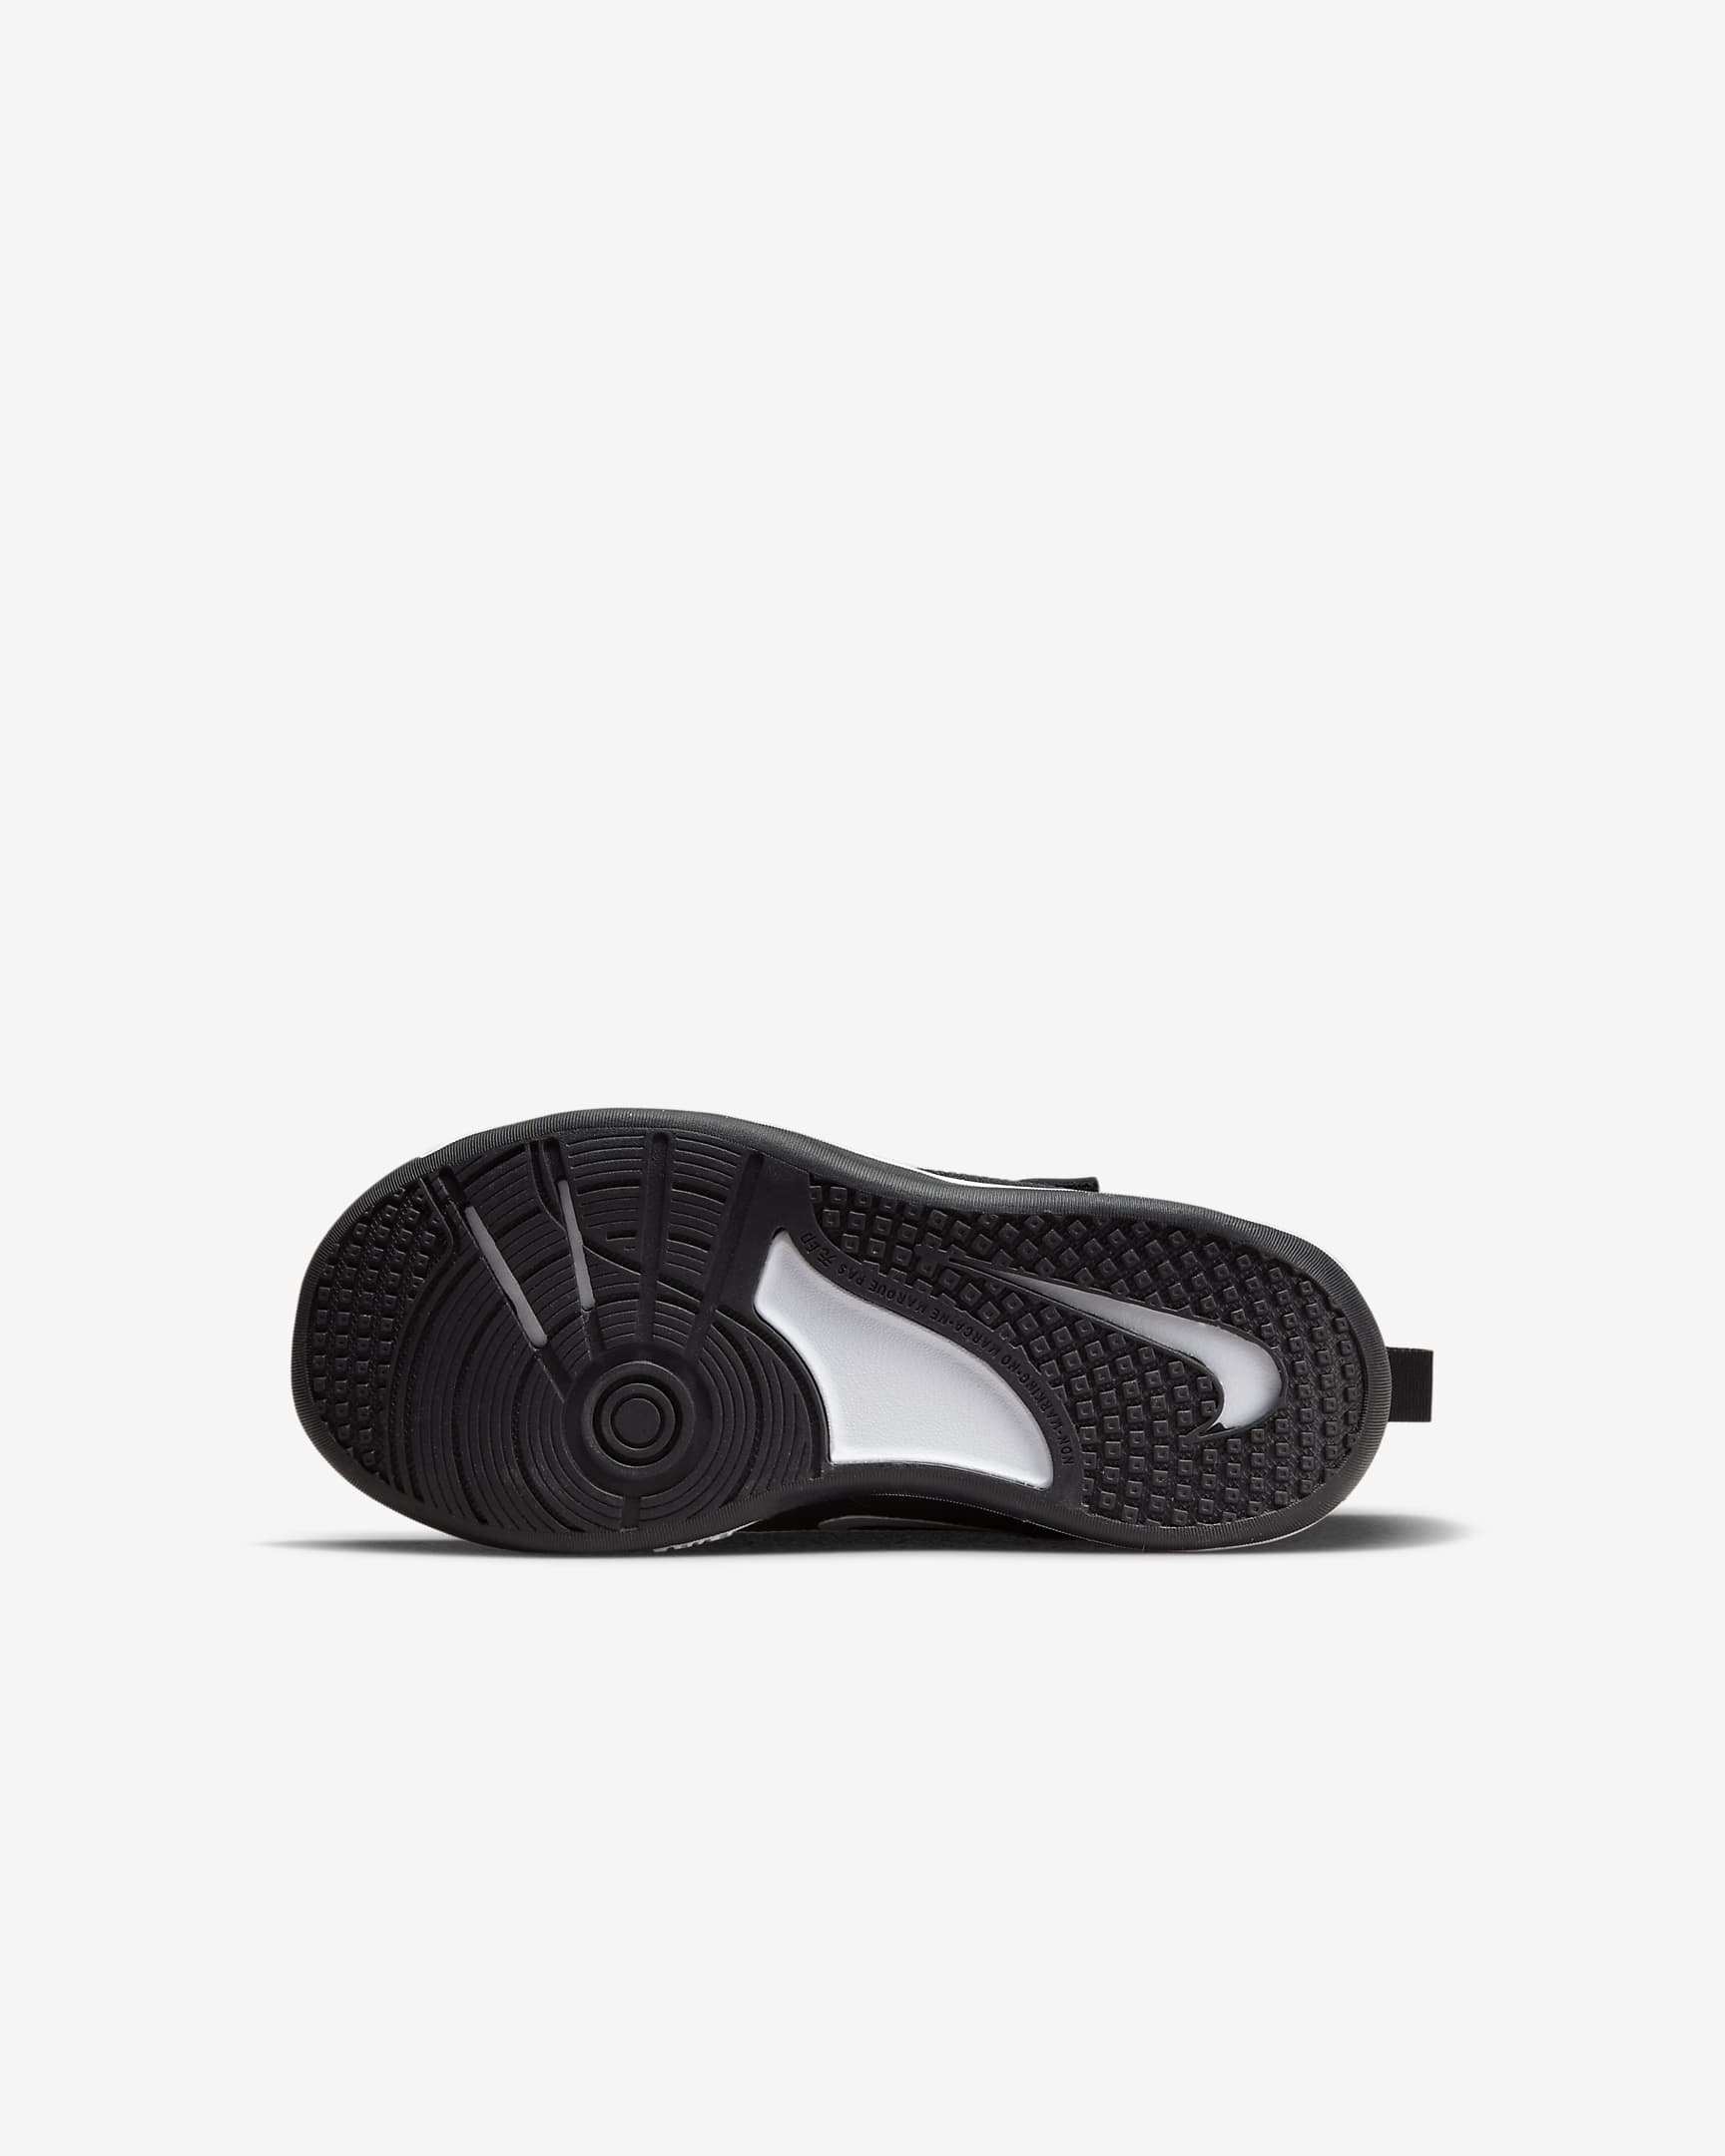 Chaussure Nike Omni Multi-Court pour jeune enfant - Noir/Blanc